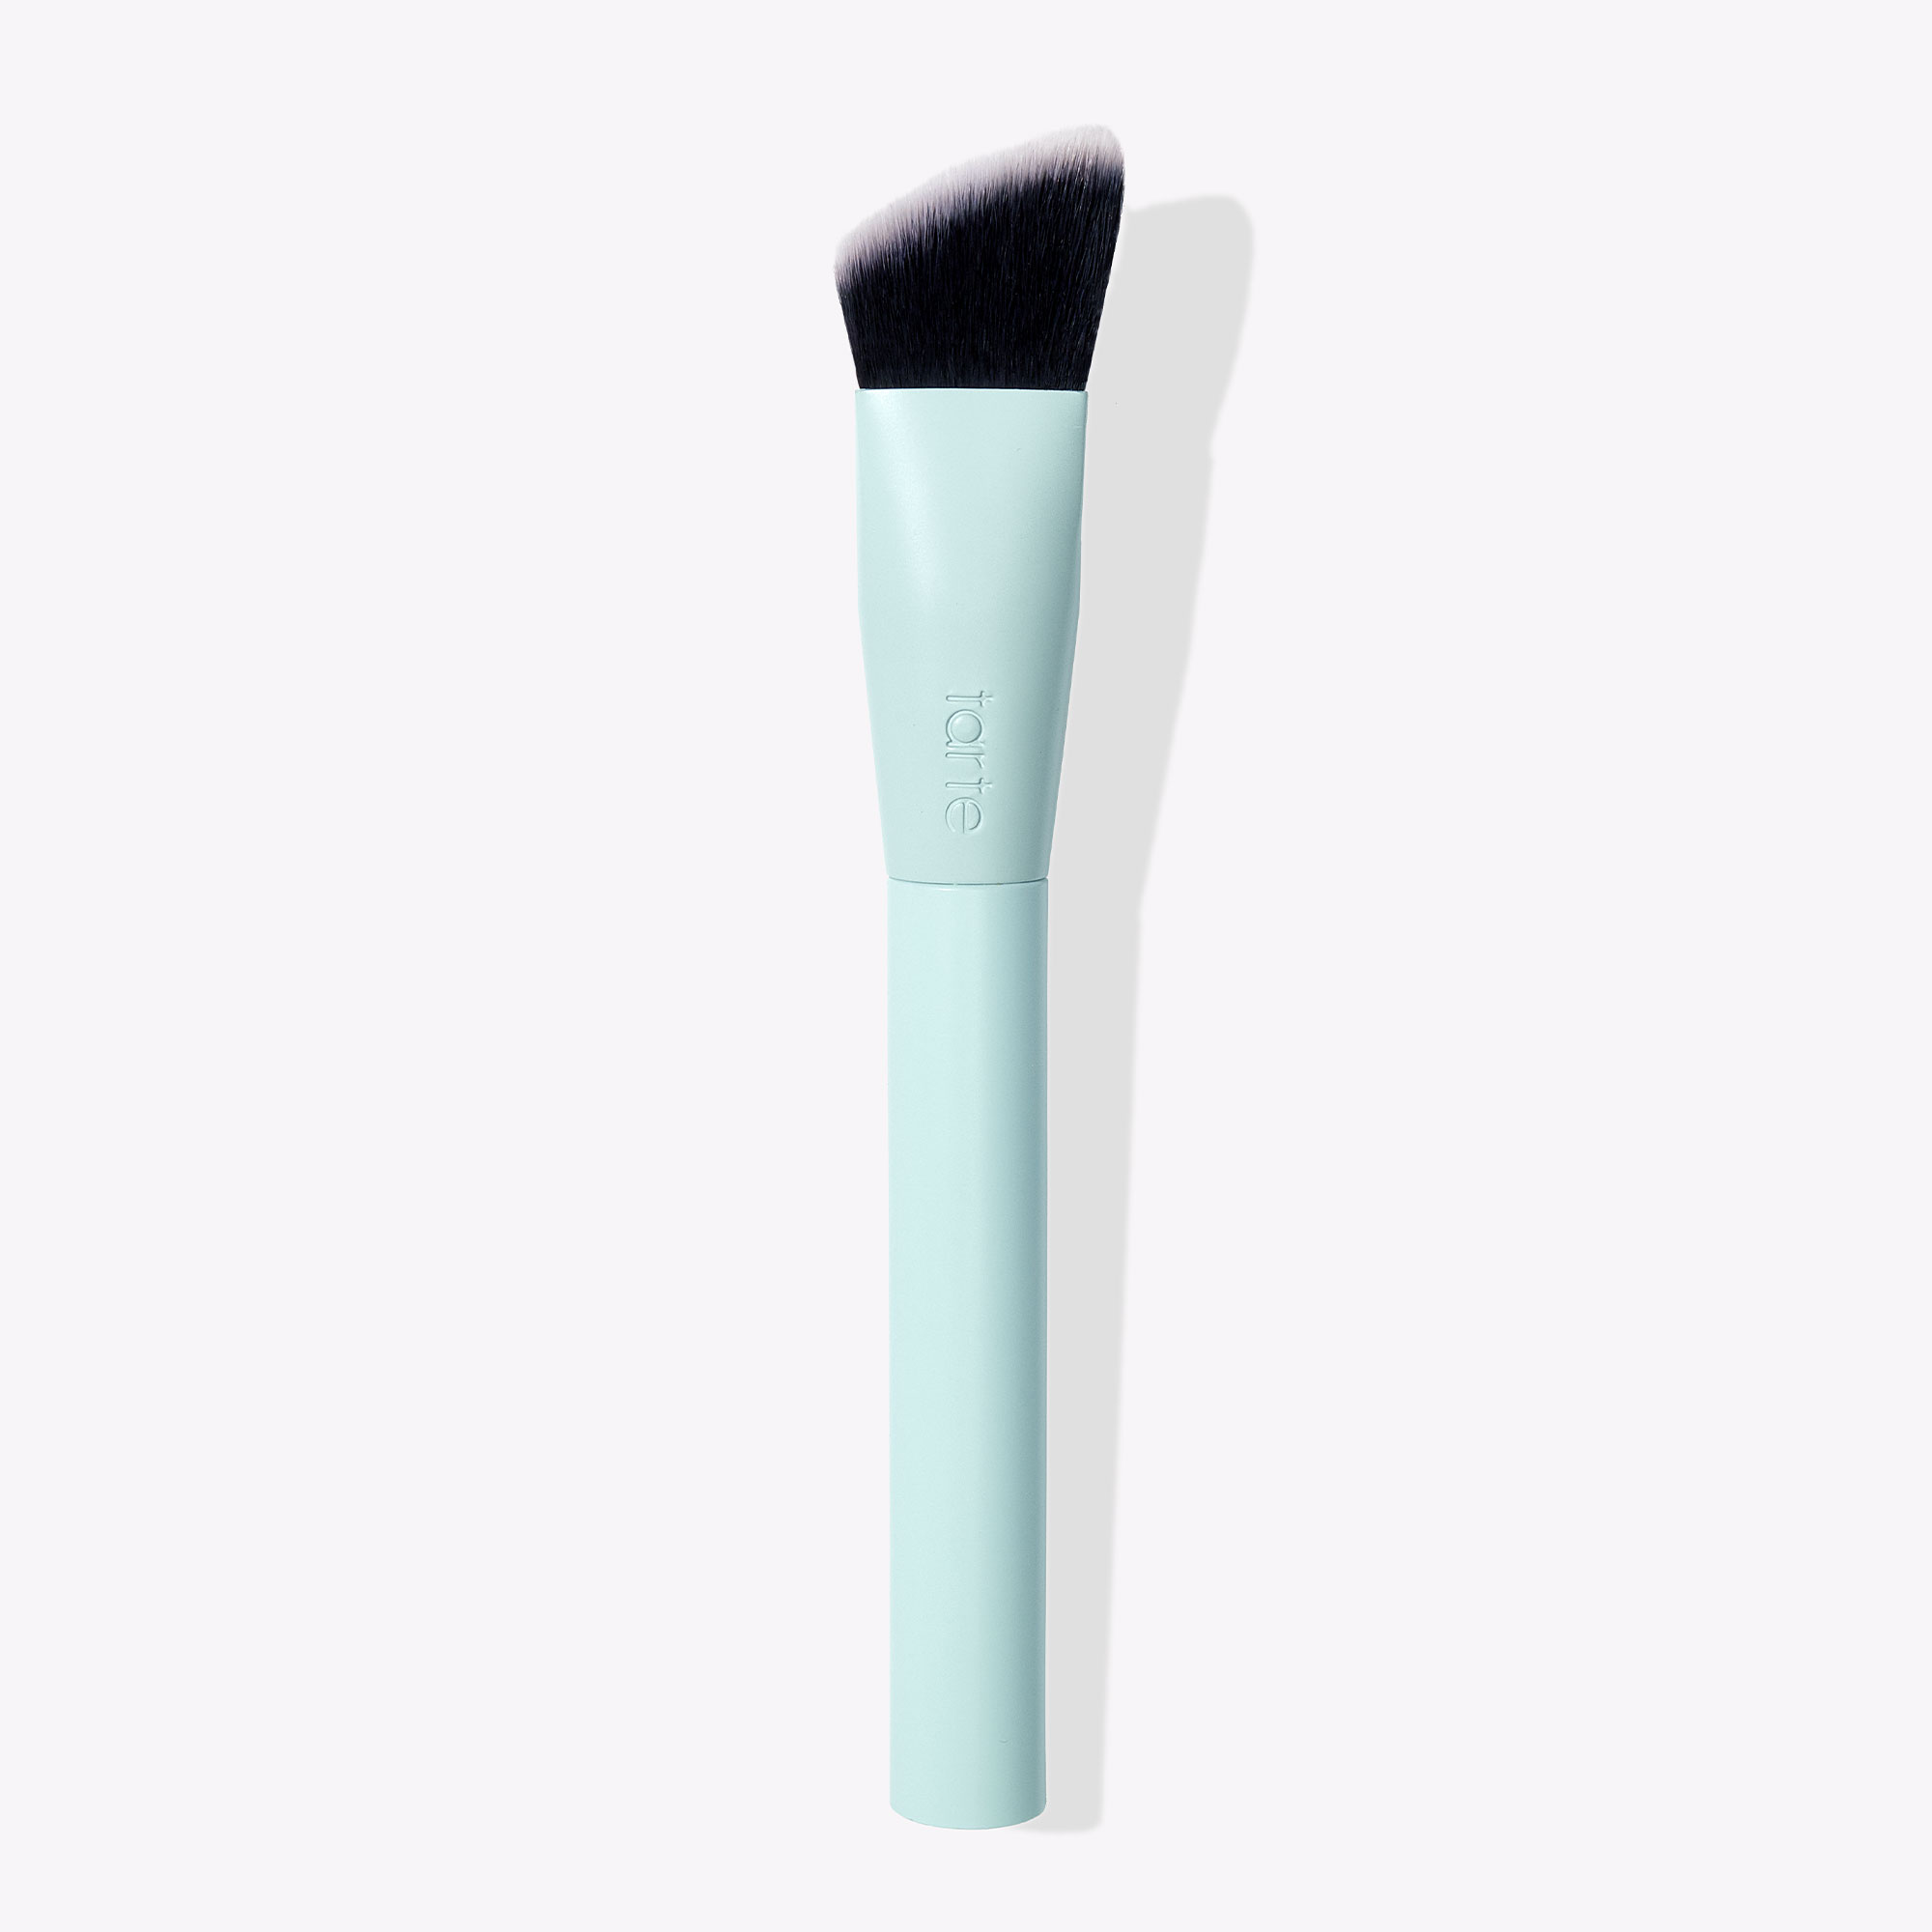 Tarte Cosmetics Power Flexer Brush In White